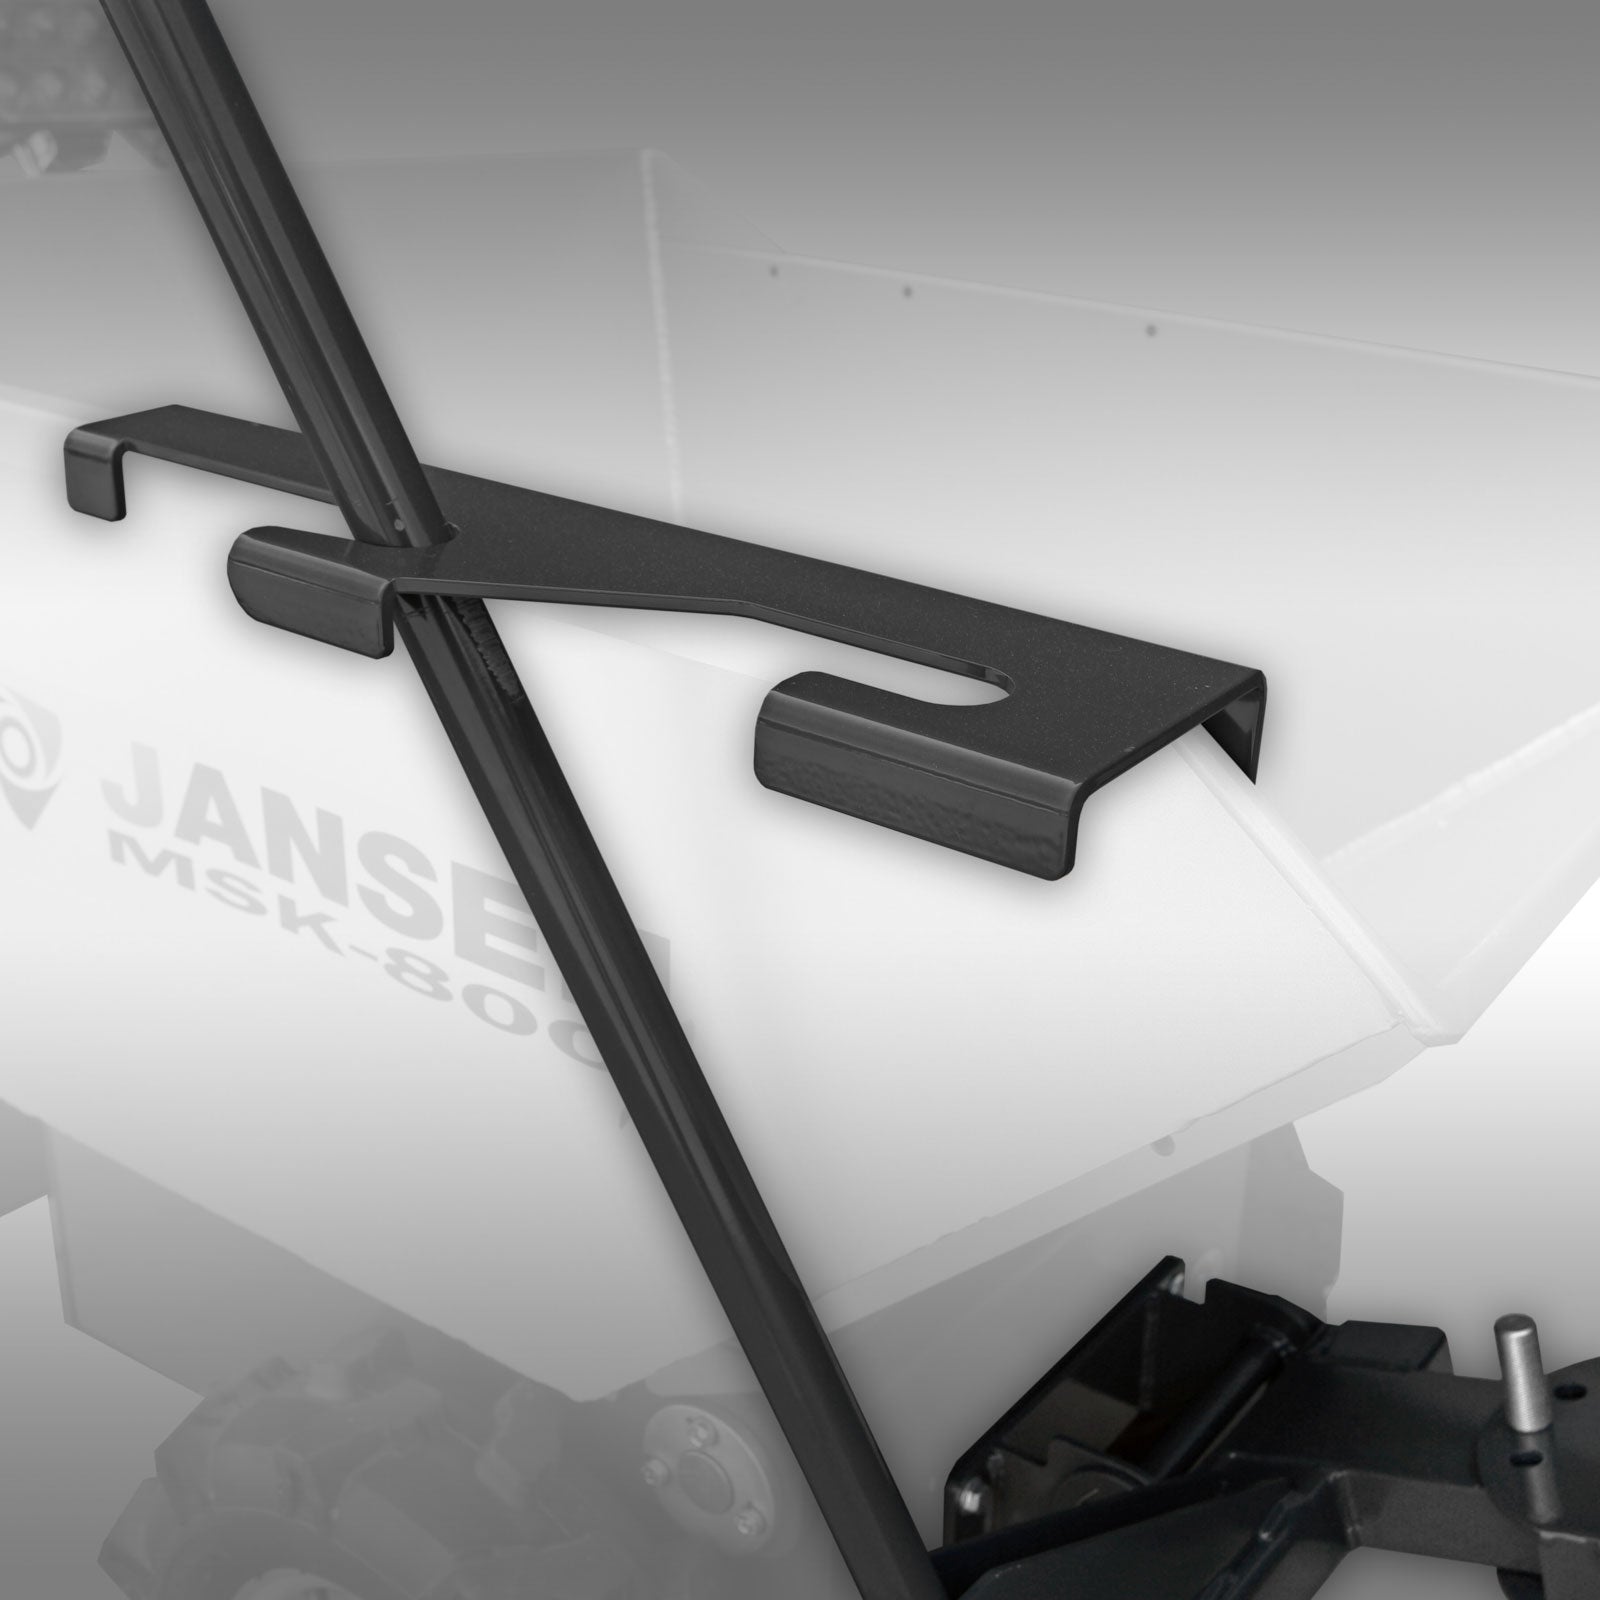 Schneeschild für Elektrodumper Jansen MSK-800X